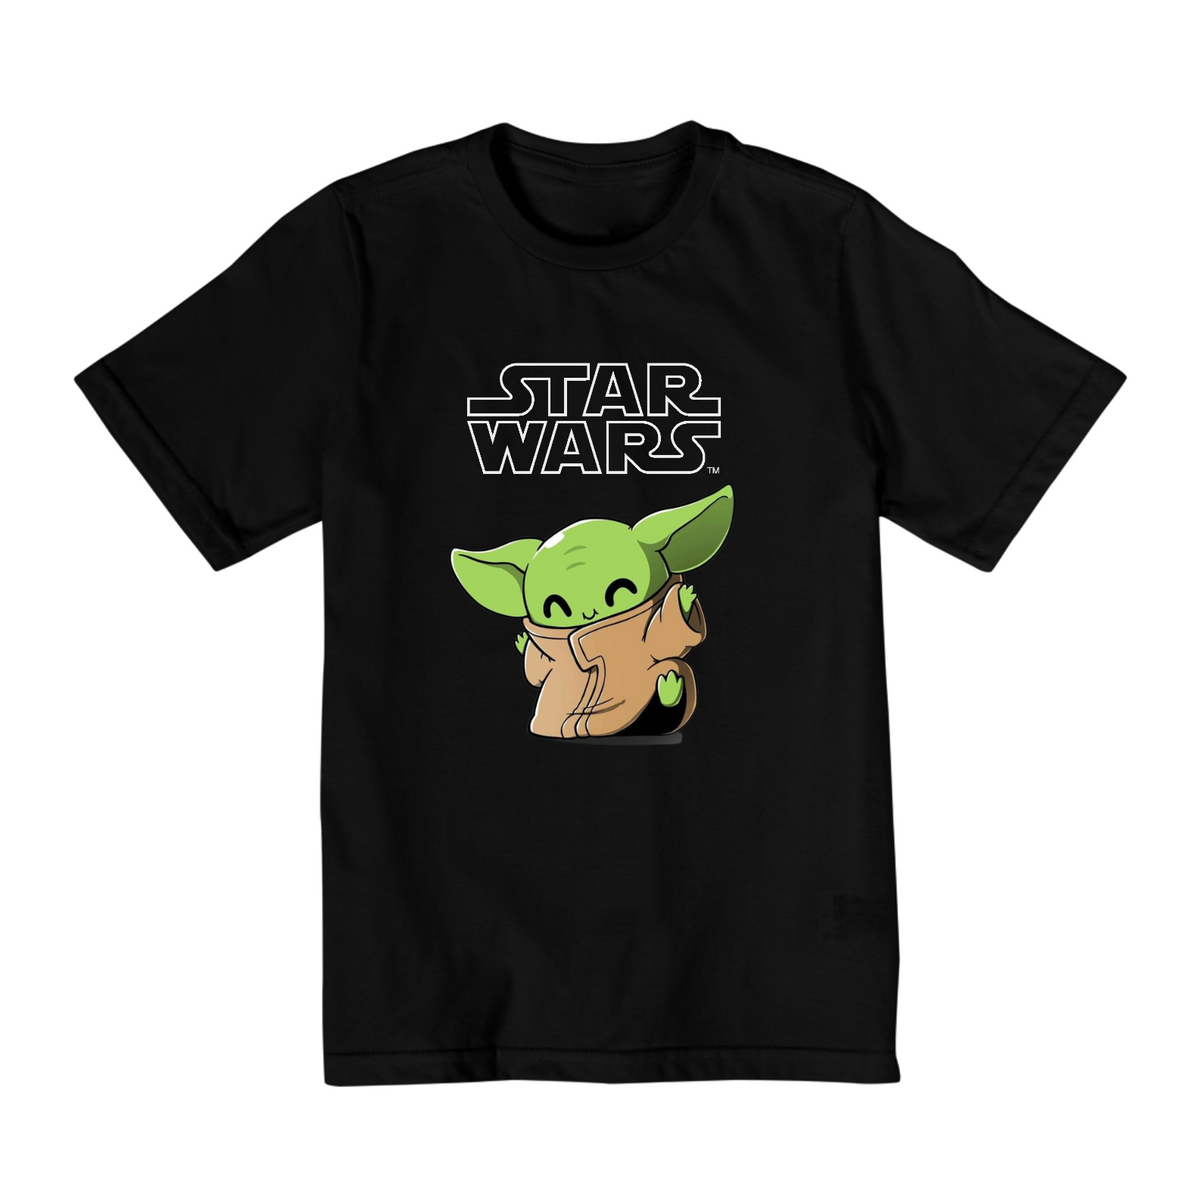 Nome do produto: Coleção Star Wars - Camiseta infantil 02 a 08 anos - Yoda 